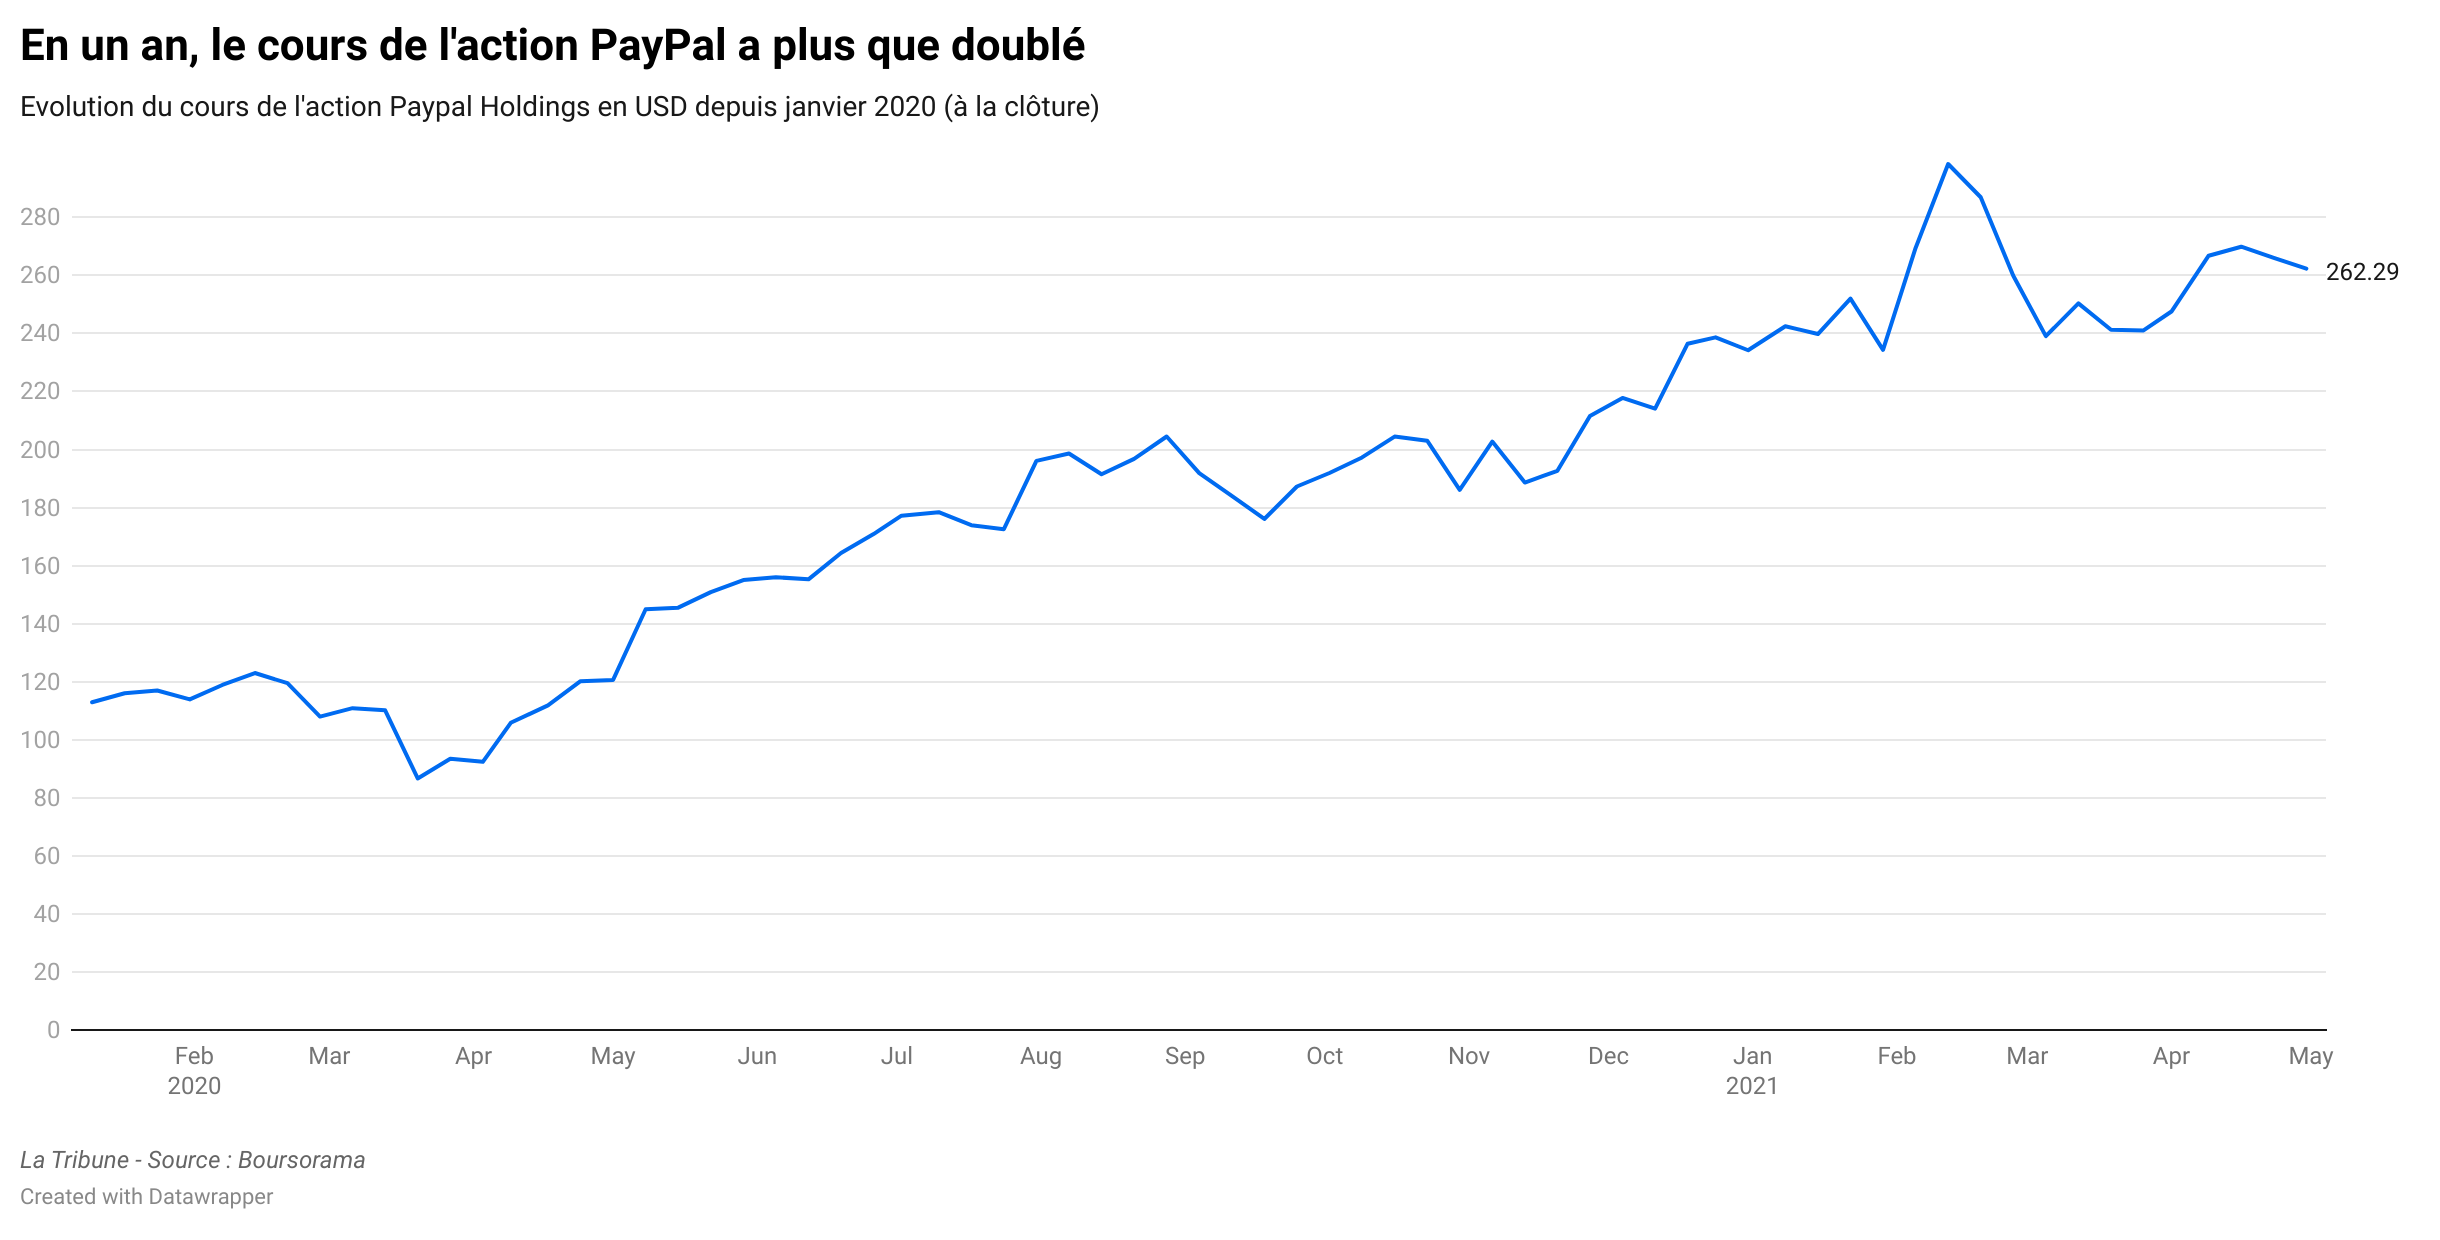 PayPal poursuit son envolée, même au sortir de la crise